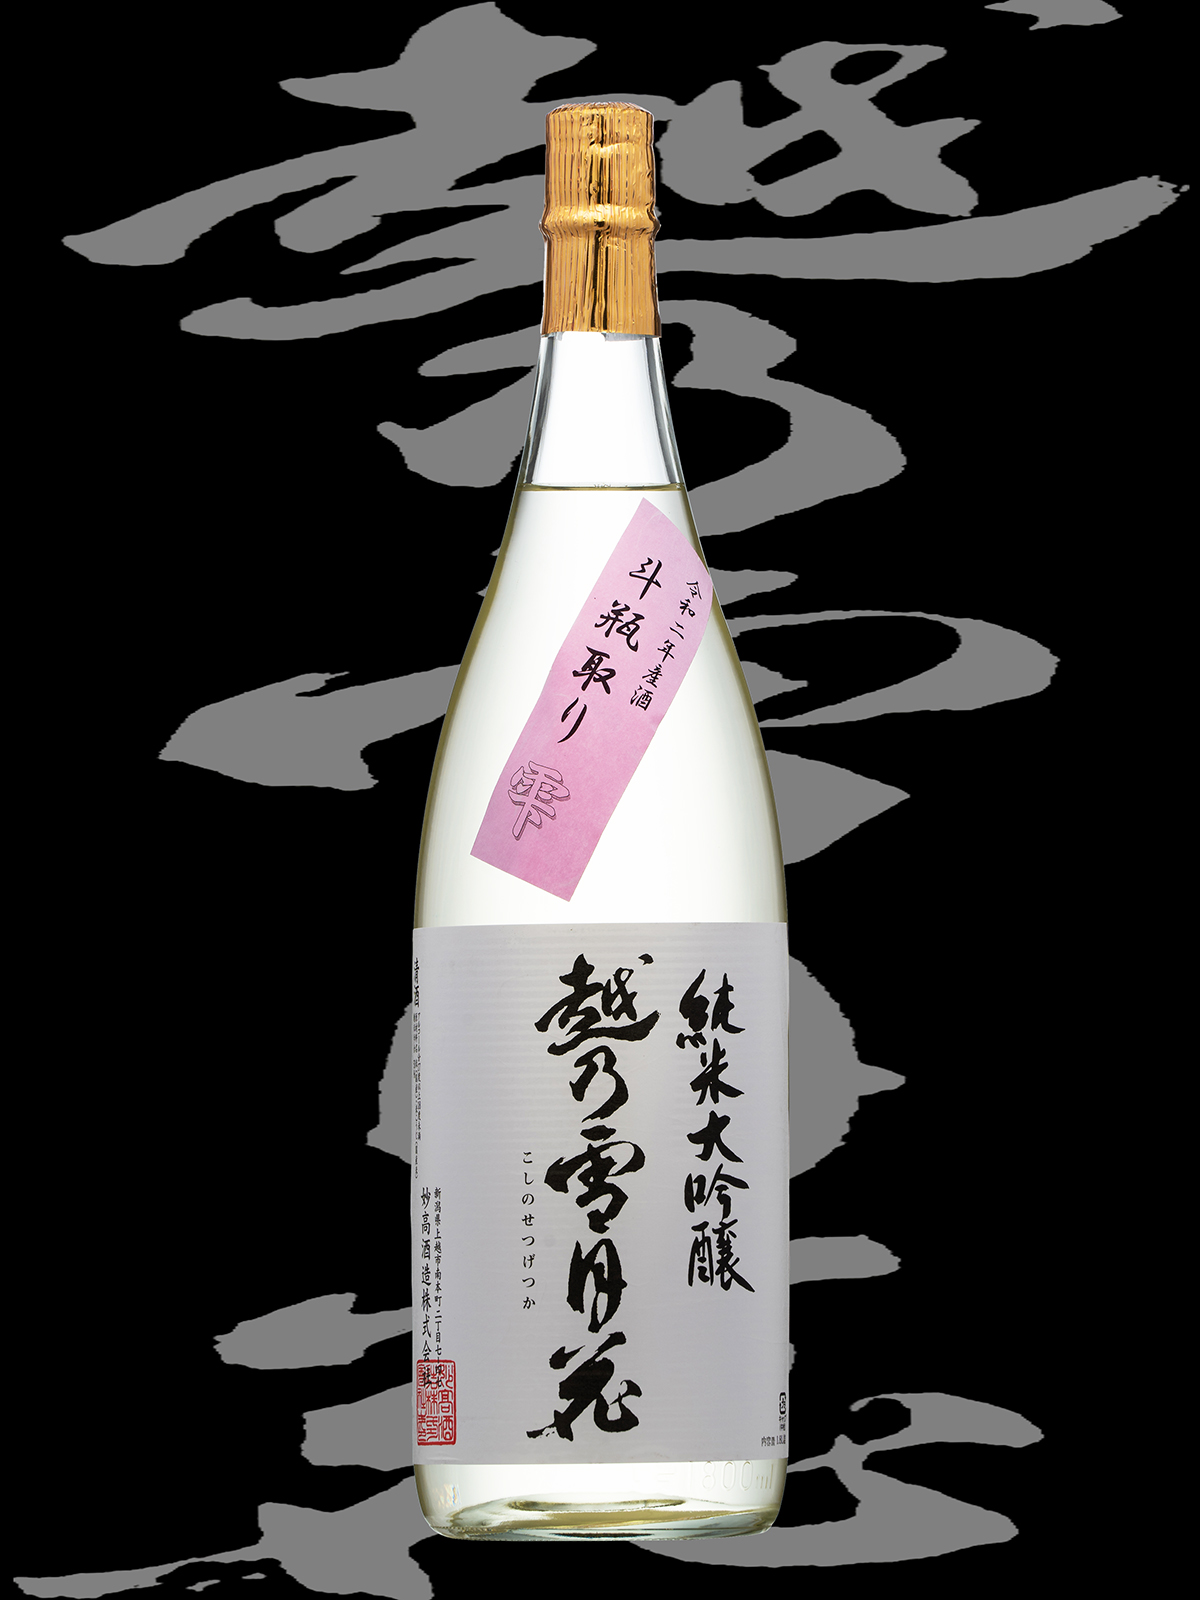 越乃雪月花（こしのせつげつか）「純米大吟醸」斗瓶取り雫